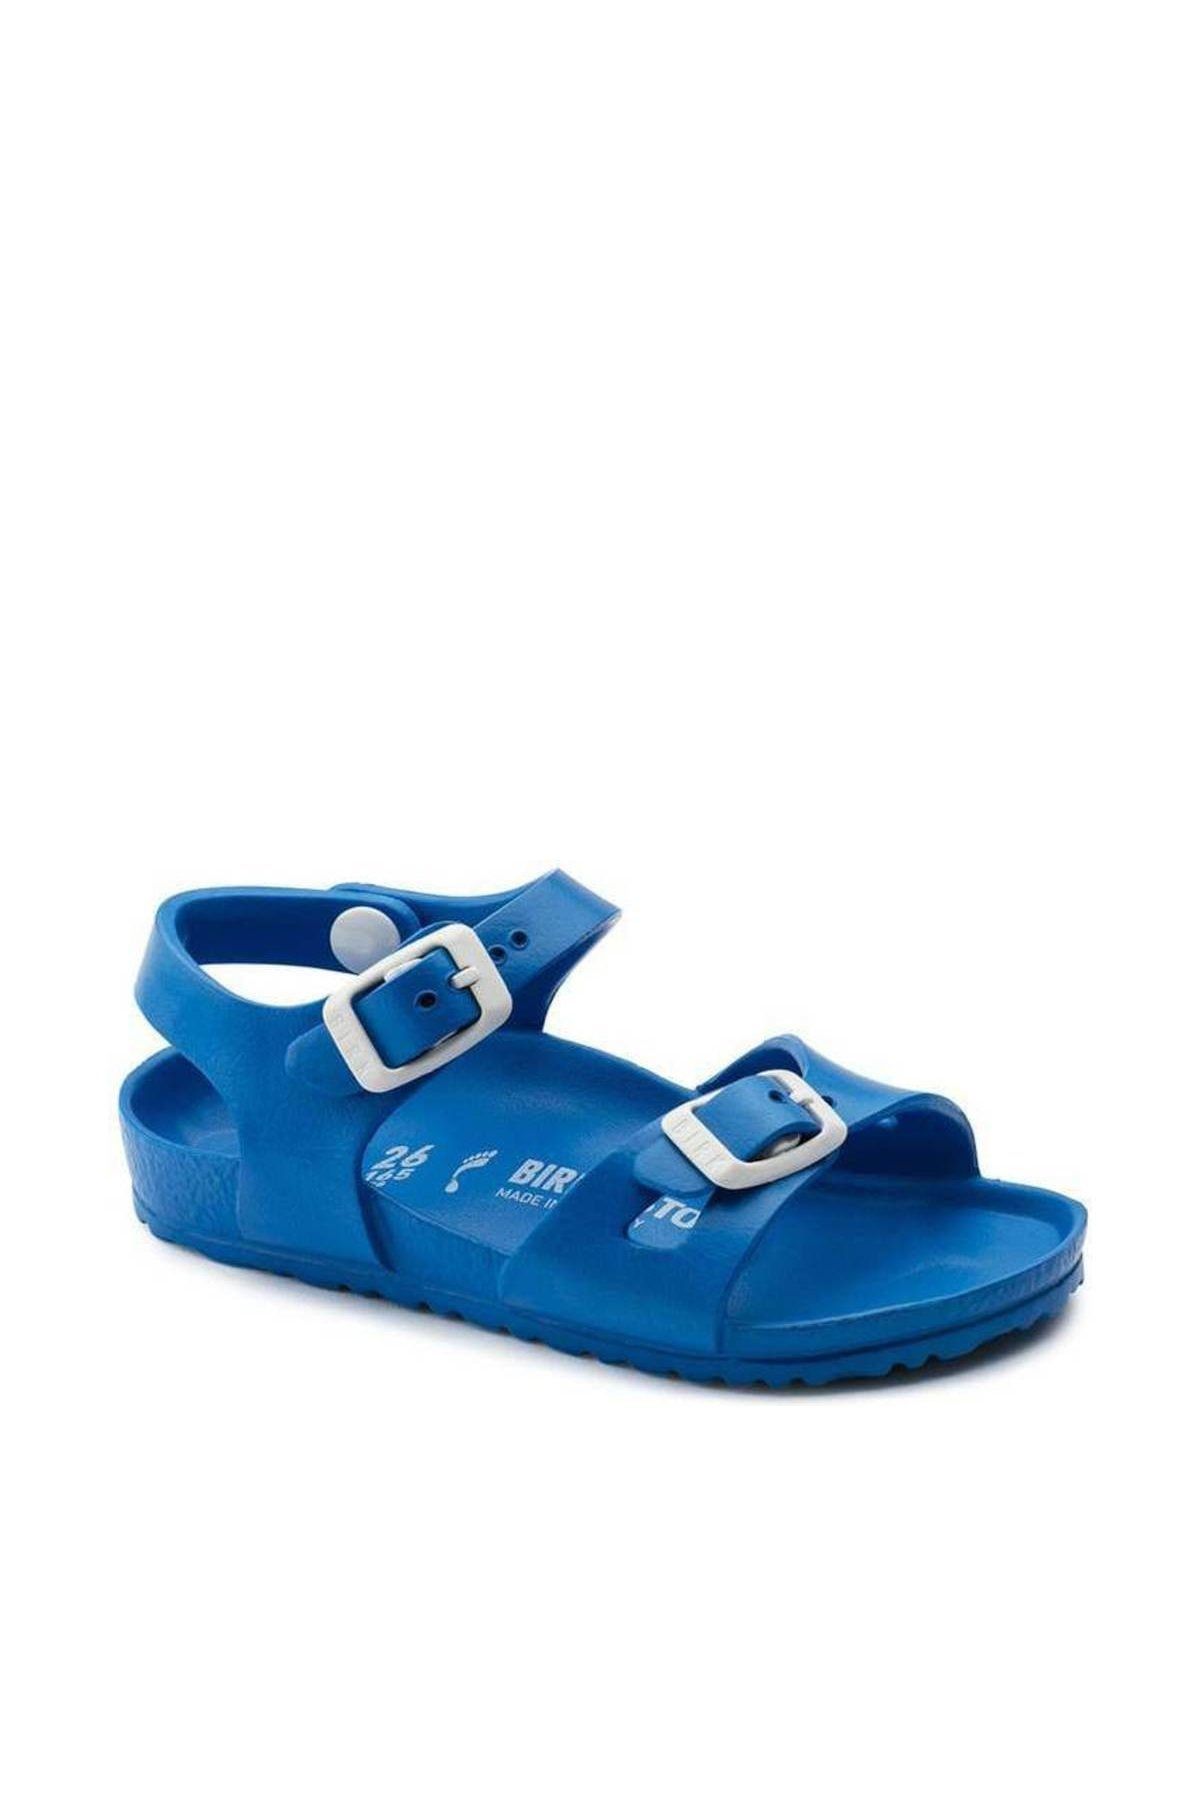 Birkenstock Rıo Eva Mavi Sandalet 1003535_Mavi